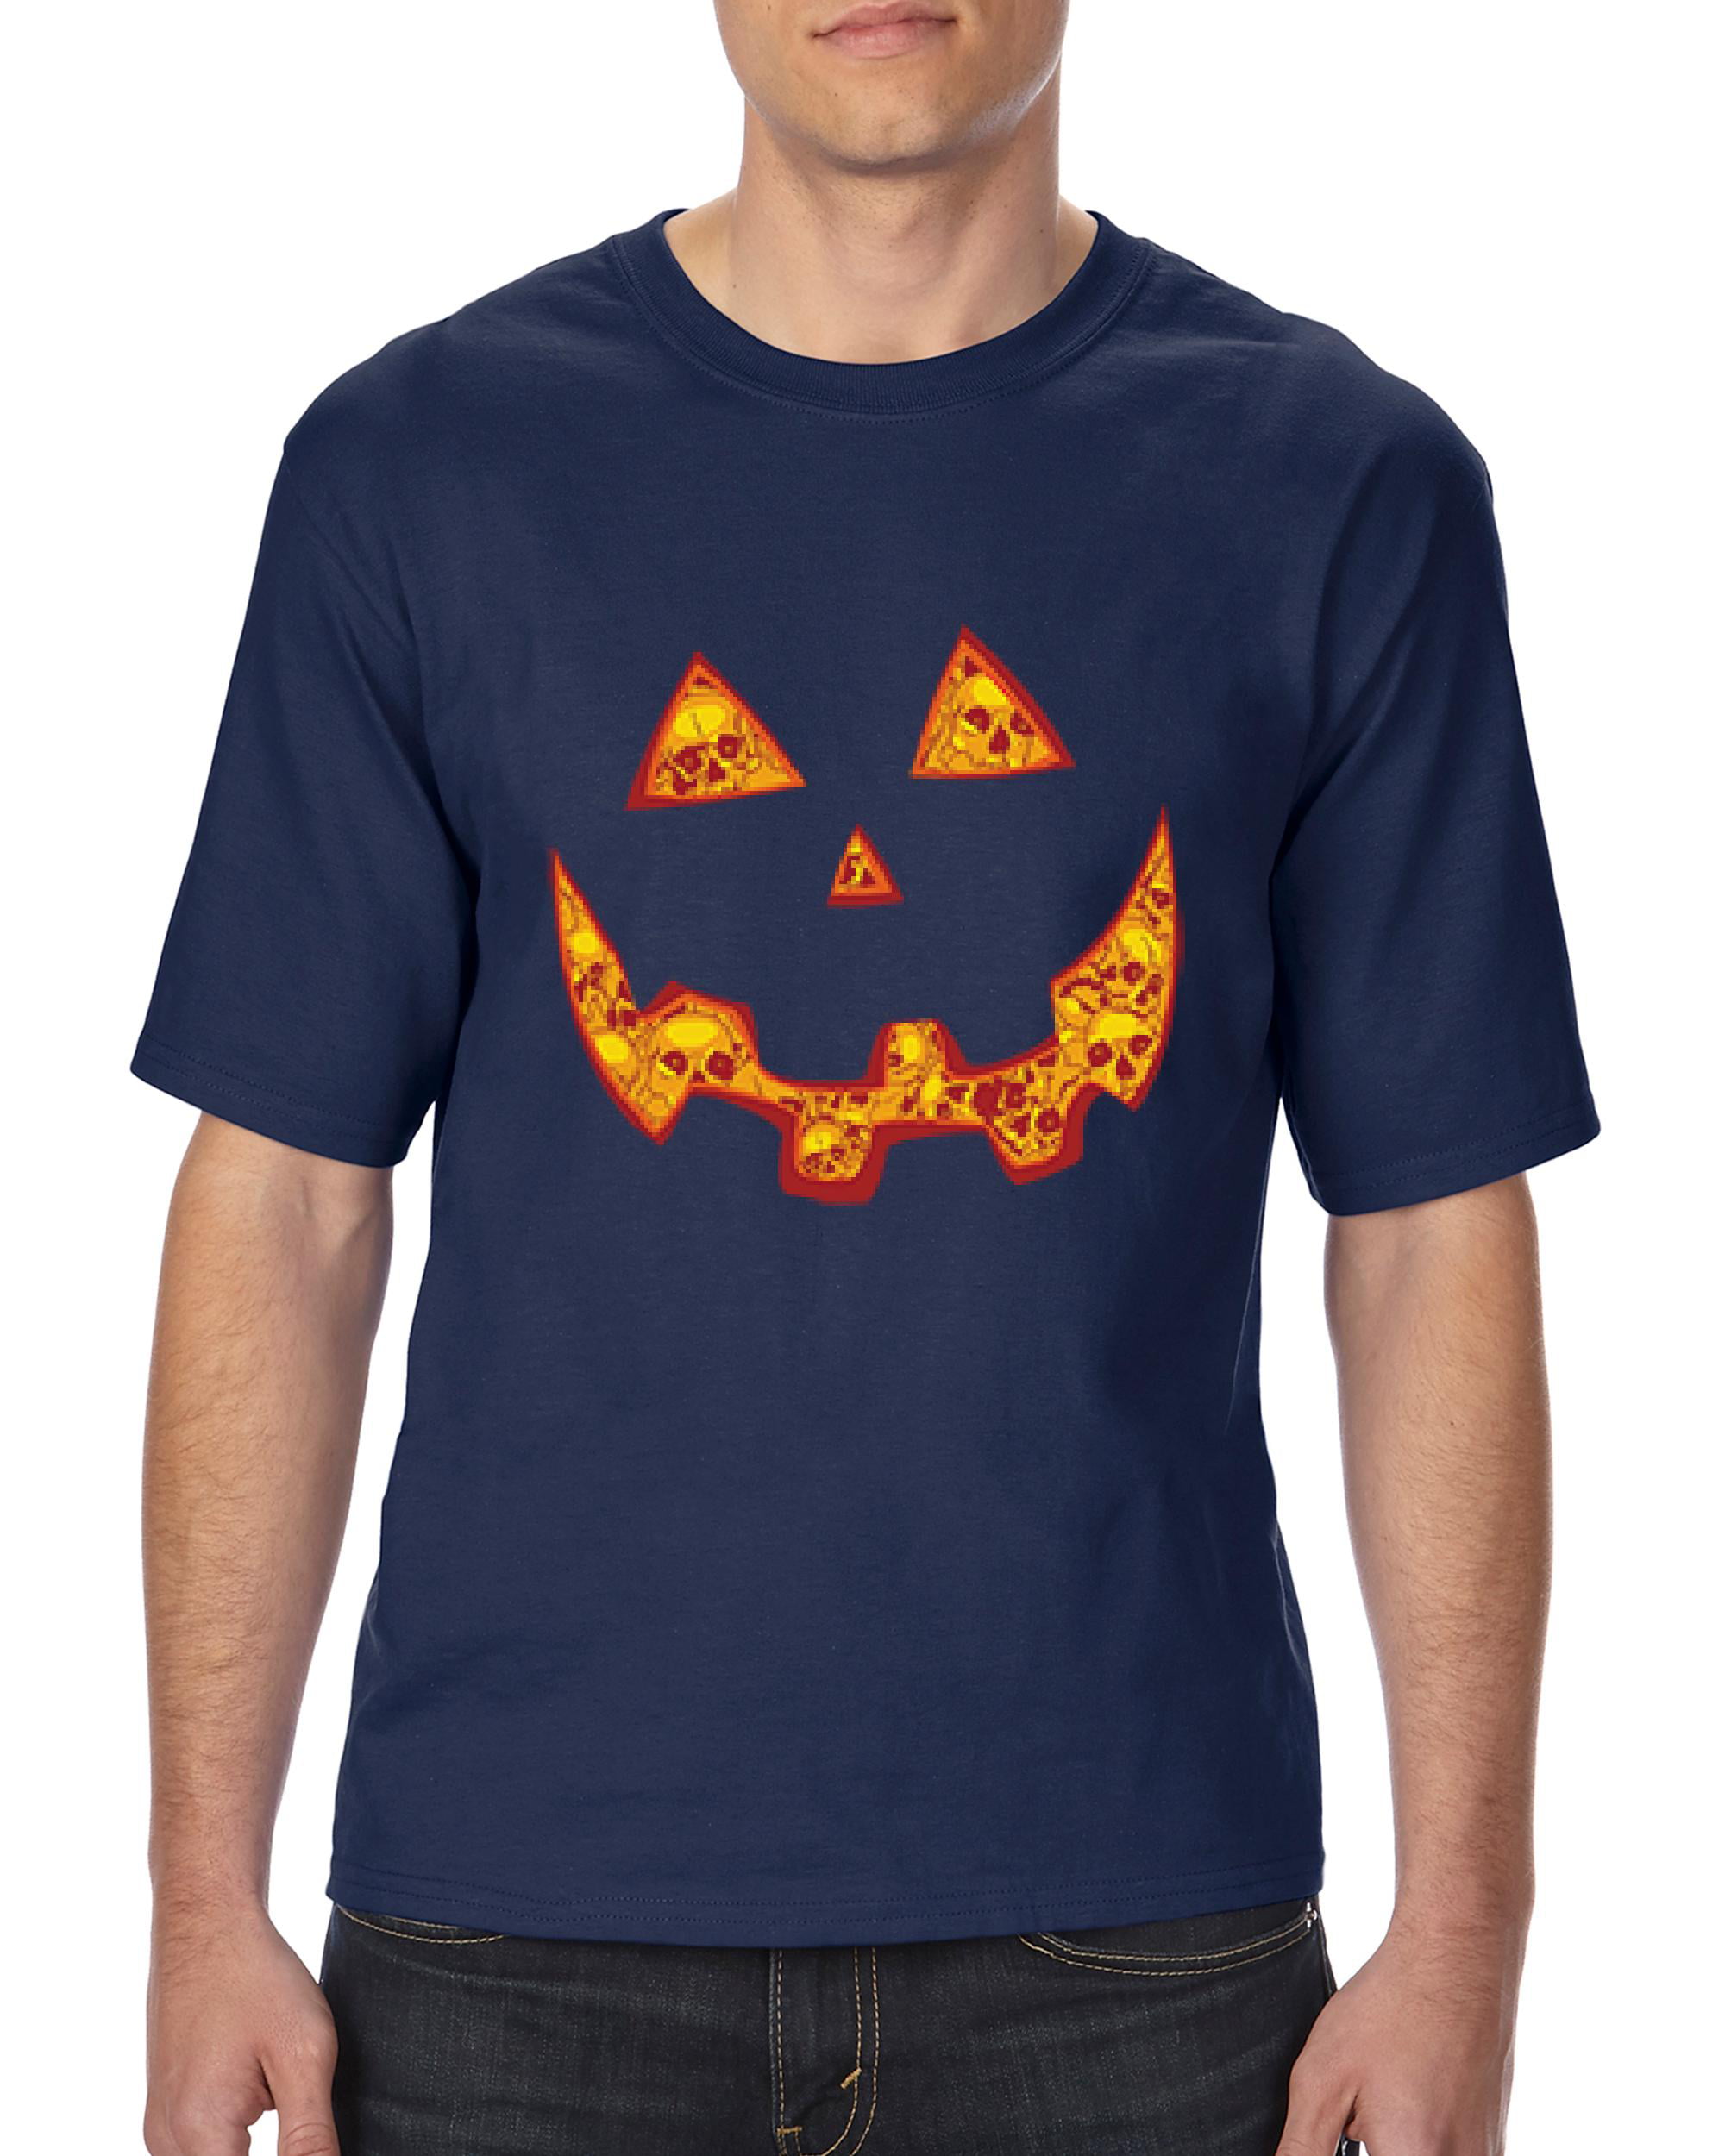 BigtimeTeez Review: Halloween Edition: Pumpkin Face Halloween Costume T- Shirt